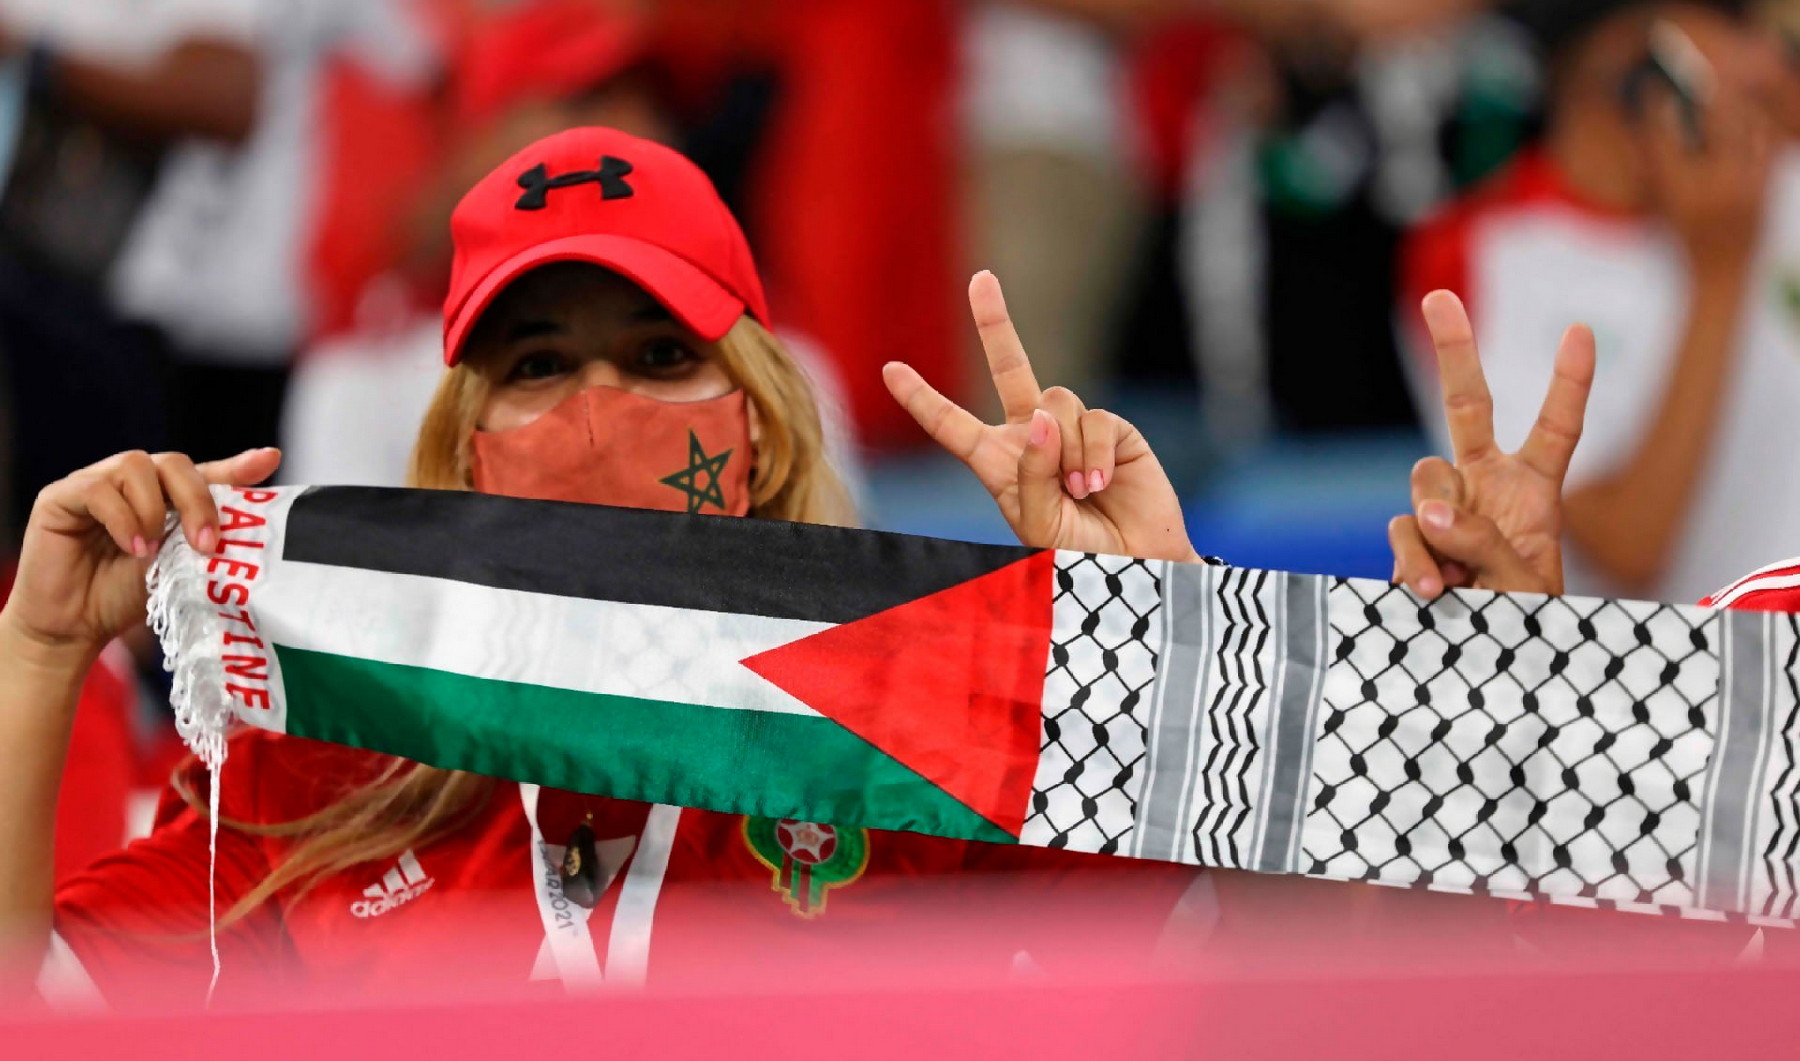 رئيس وزراء فلسطين يقطع الطريق على أعداء المغرب ويؤكد:”العلاقة بين فلسطين والمغرب هي علاقة ضاربة في التاريخ “